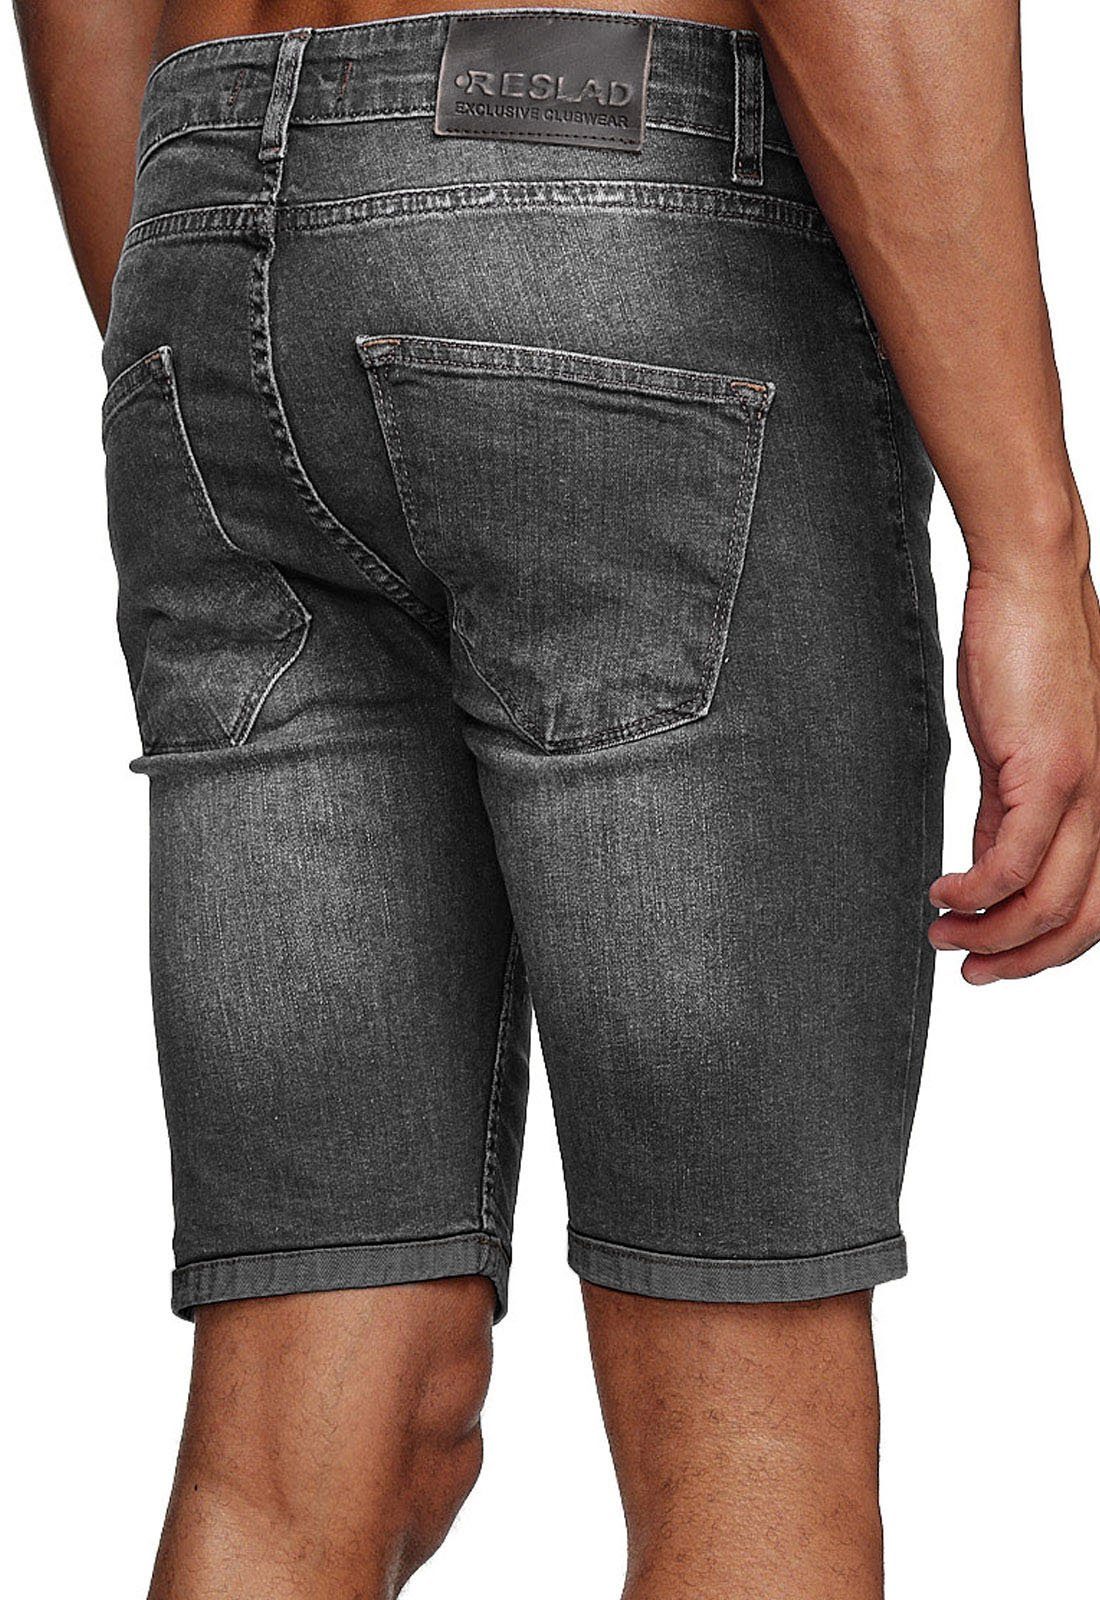 Shorts Jeansshorts Kurze Look Used Jeans-Hose l anthrazit Jeansbermudas Sommer Denim Stretch Jeans Washed Reslad Herren Männe Hosen Reslad